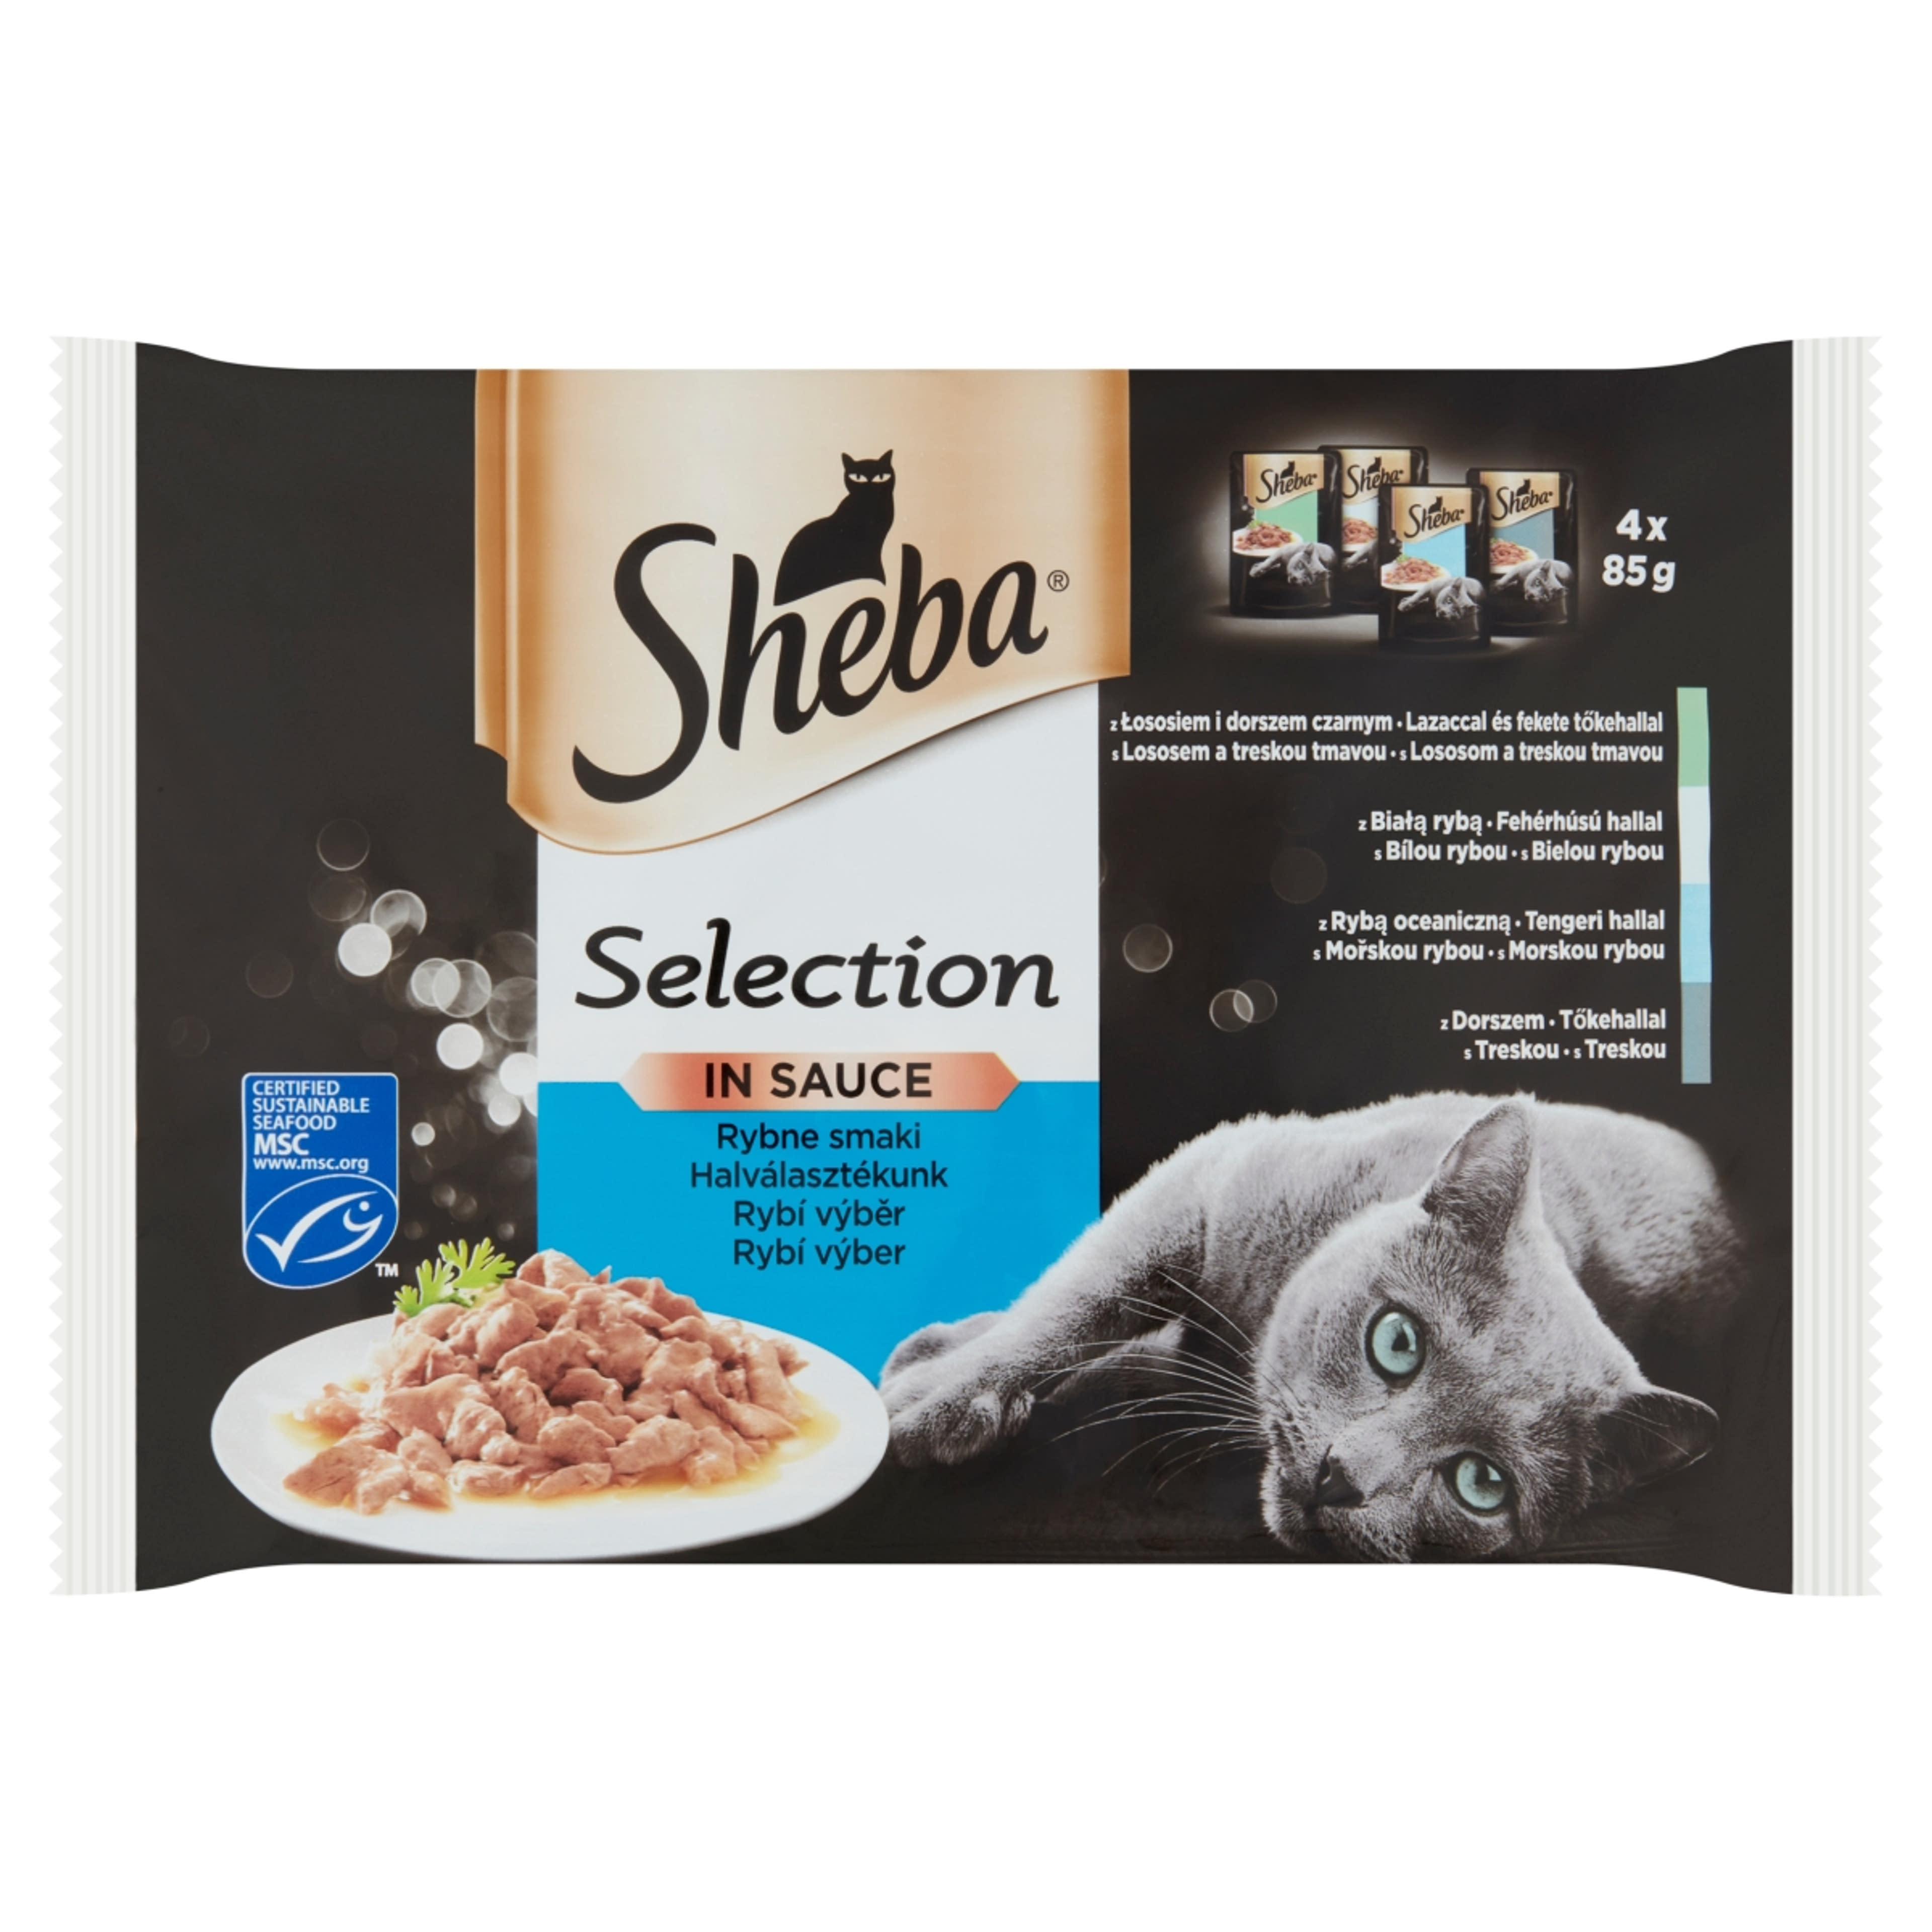 Sheba felnőtt teljes értékű alutasak macskáknak, halas válogatás (4x85 g) -  340 g-1